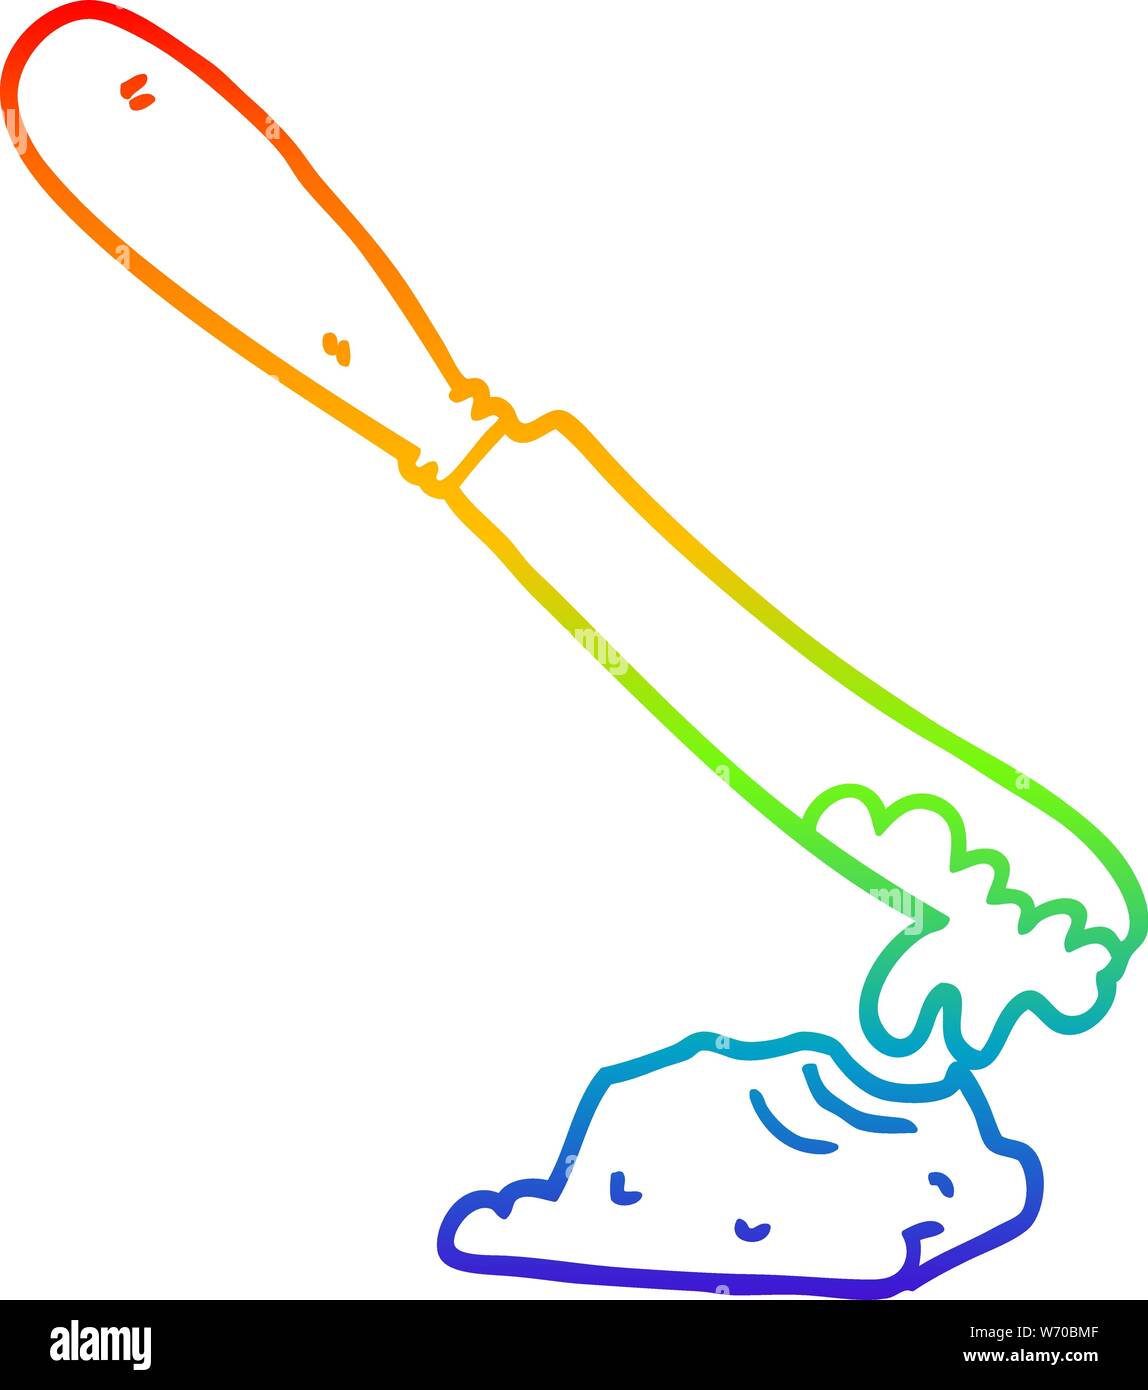 Rainbow linea di sfumatura di disegno di un cartoon Coltello per burro di diffusione Illustrazione Vettoriale